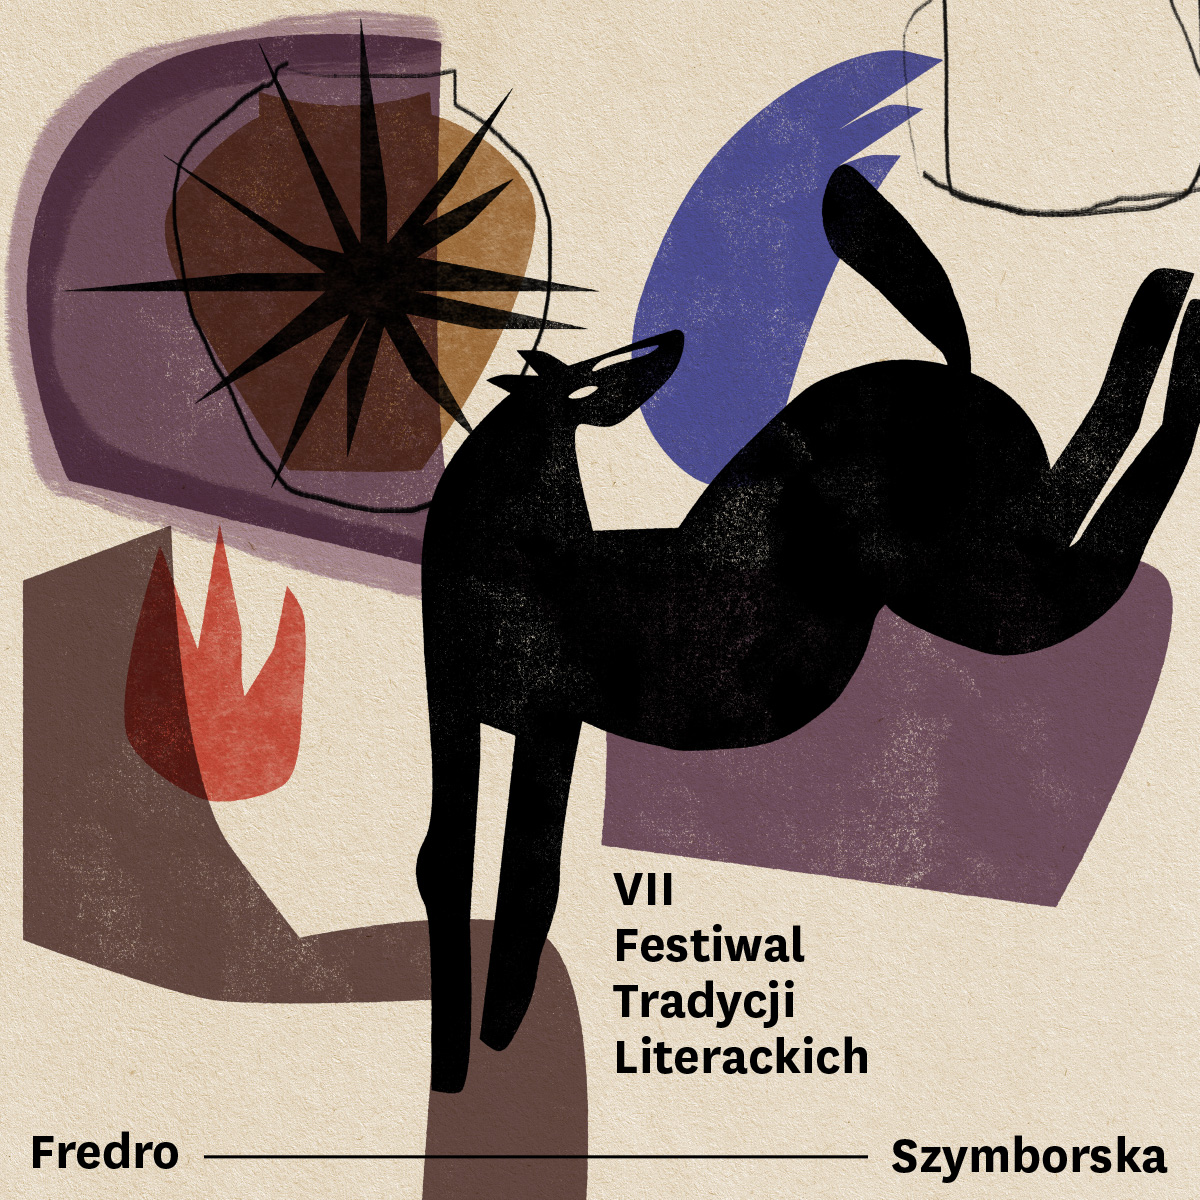 VII edycji Festiwalu Tradycji Literackich. Fredro/Szymborska w Muzeum Pana Tadeusza.